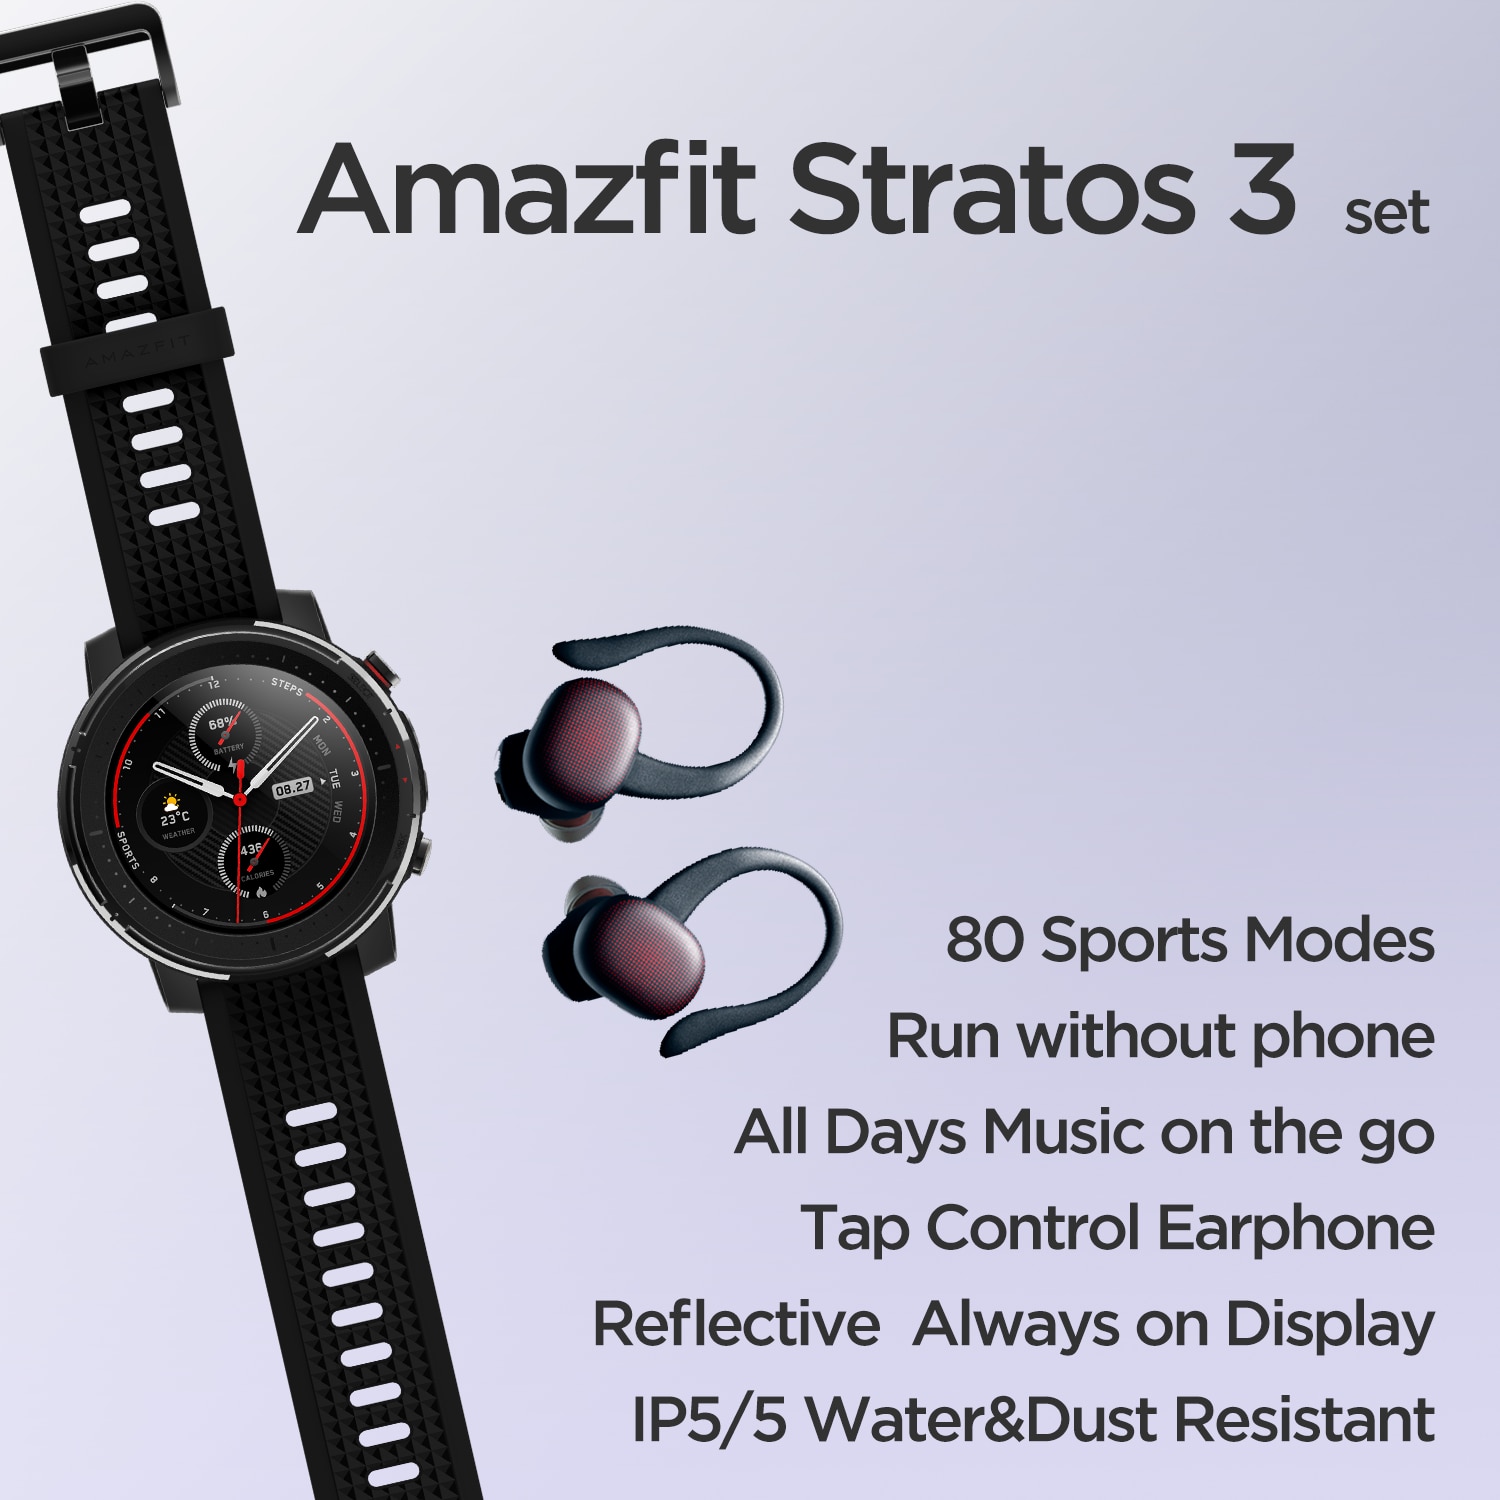 Amazfit-conjunto de smartwatch stratos 3 +, versão global, relógio inteligente com 80...